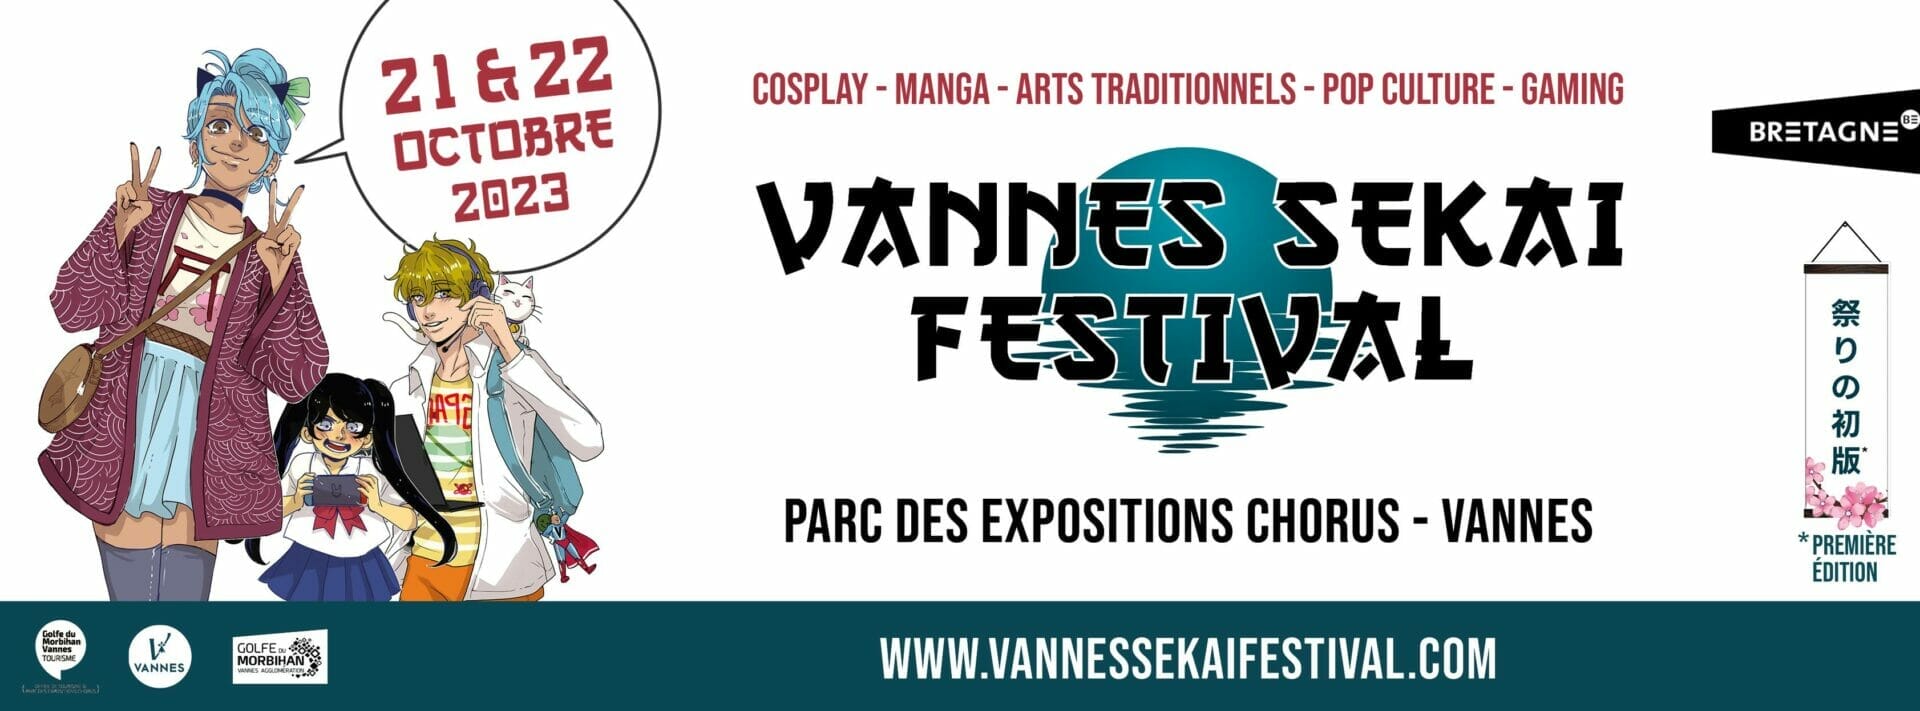 Vannes Sekaï Festival, 19 et 20 octobre 2024 à Vannes (56)